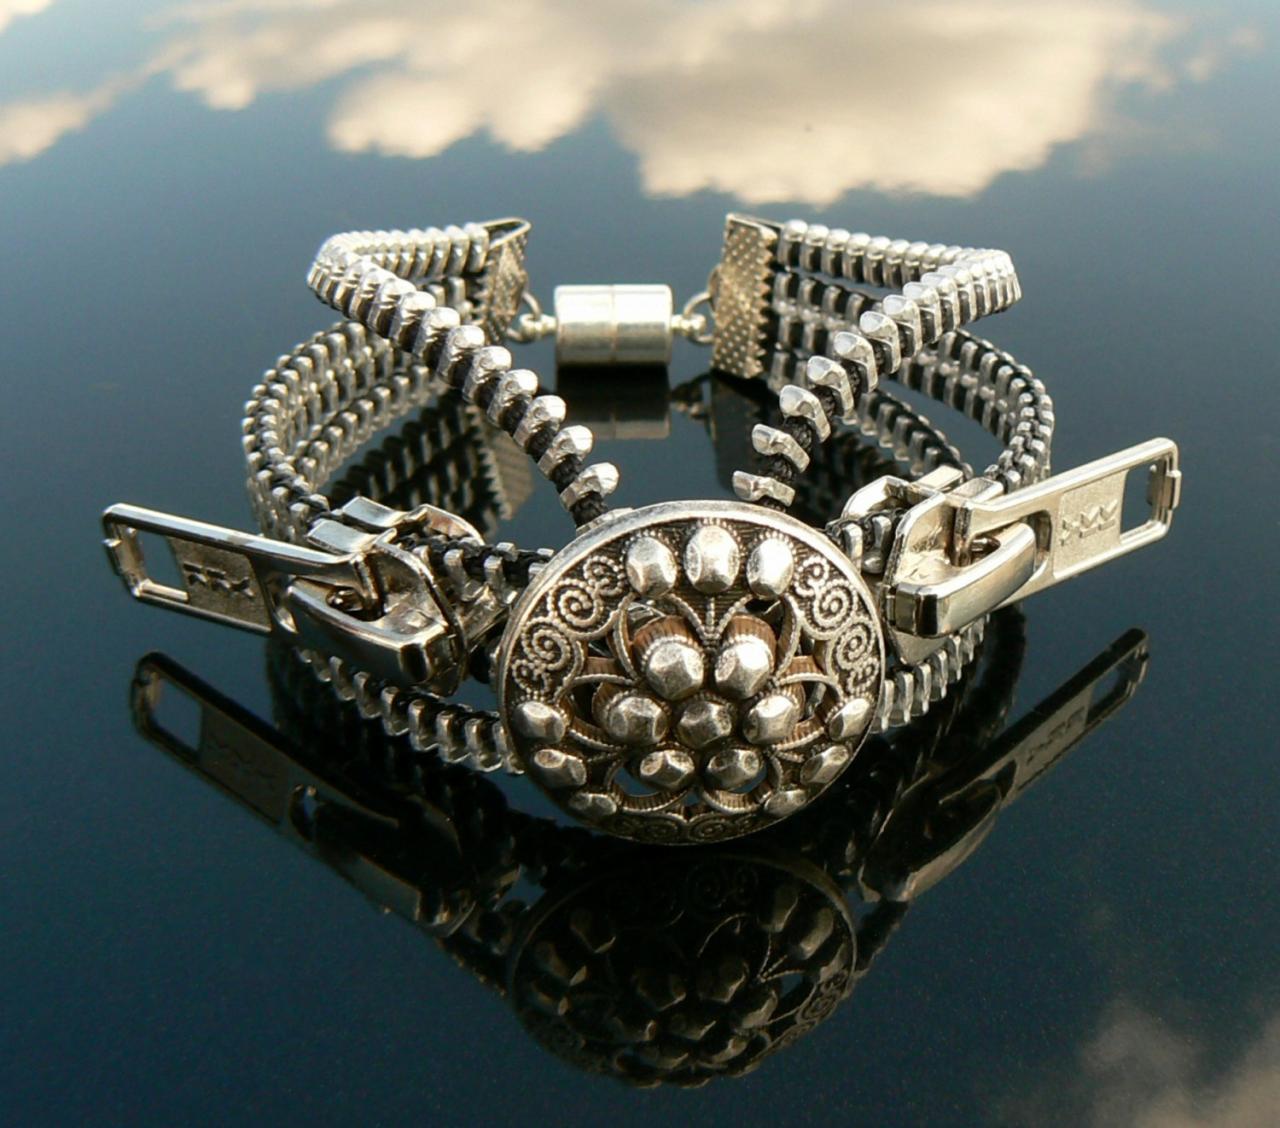 Silver Steampunk Button Zipper Cuff Bracelet - Industrial Bracelet